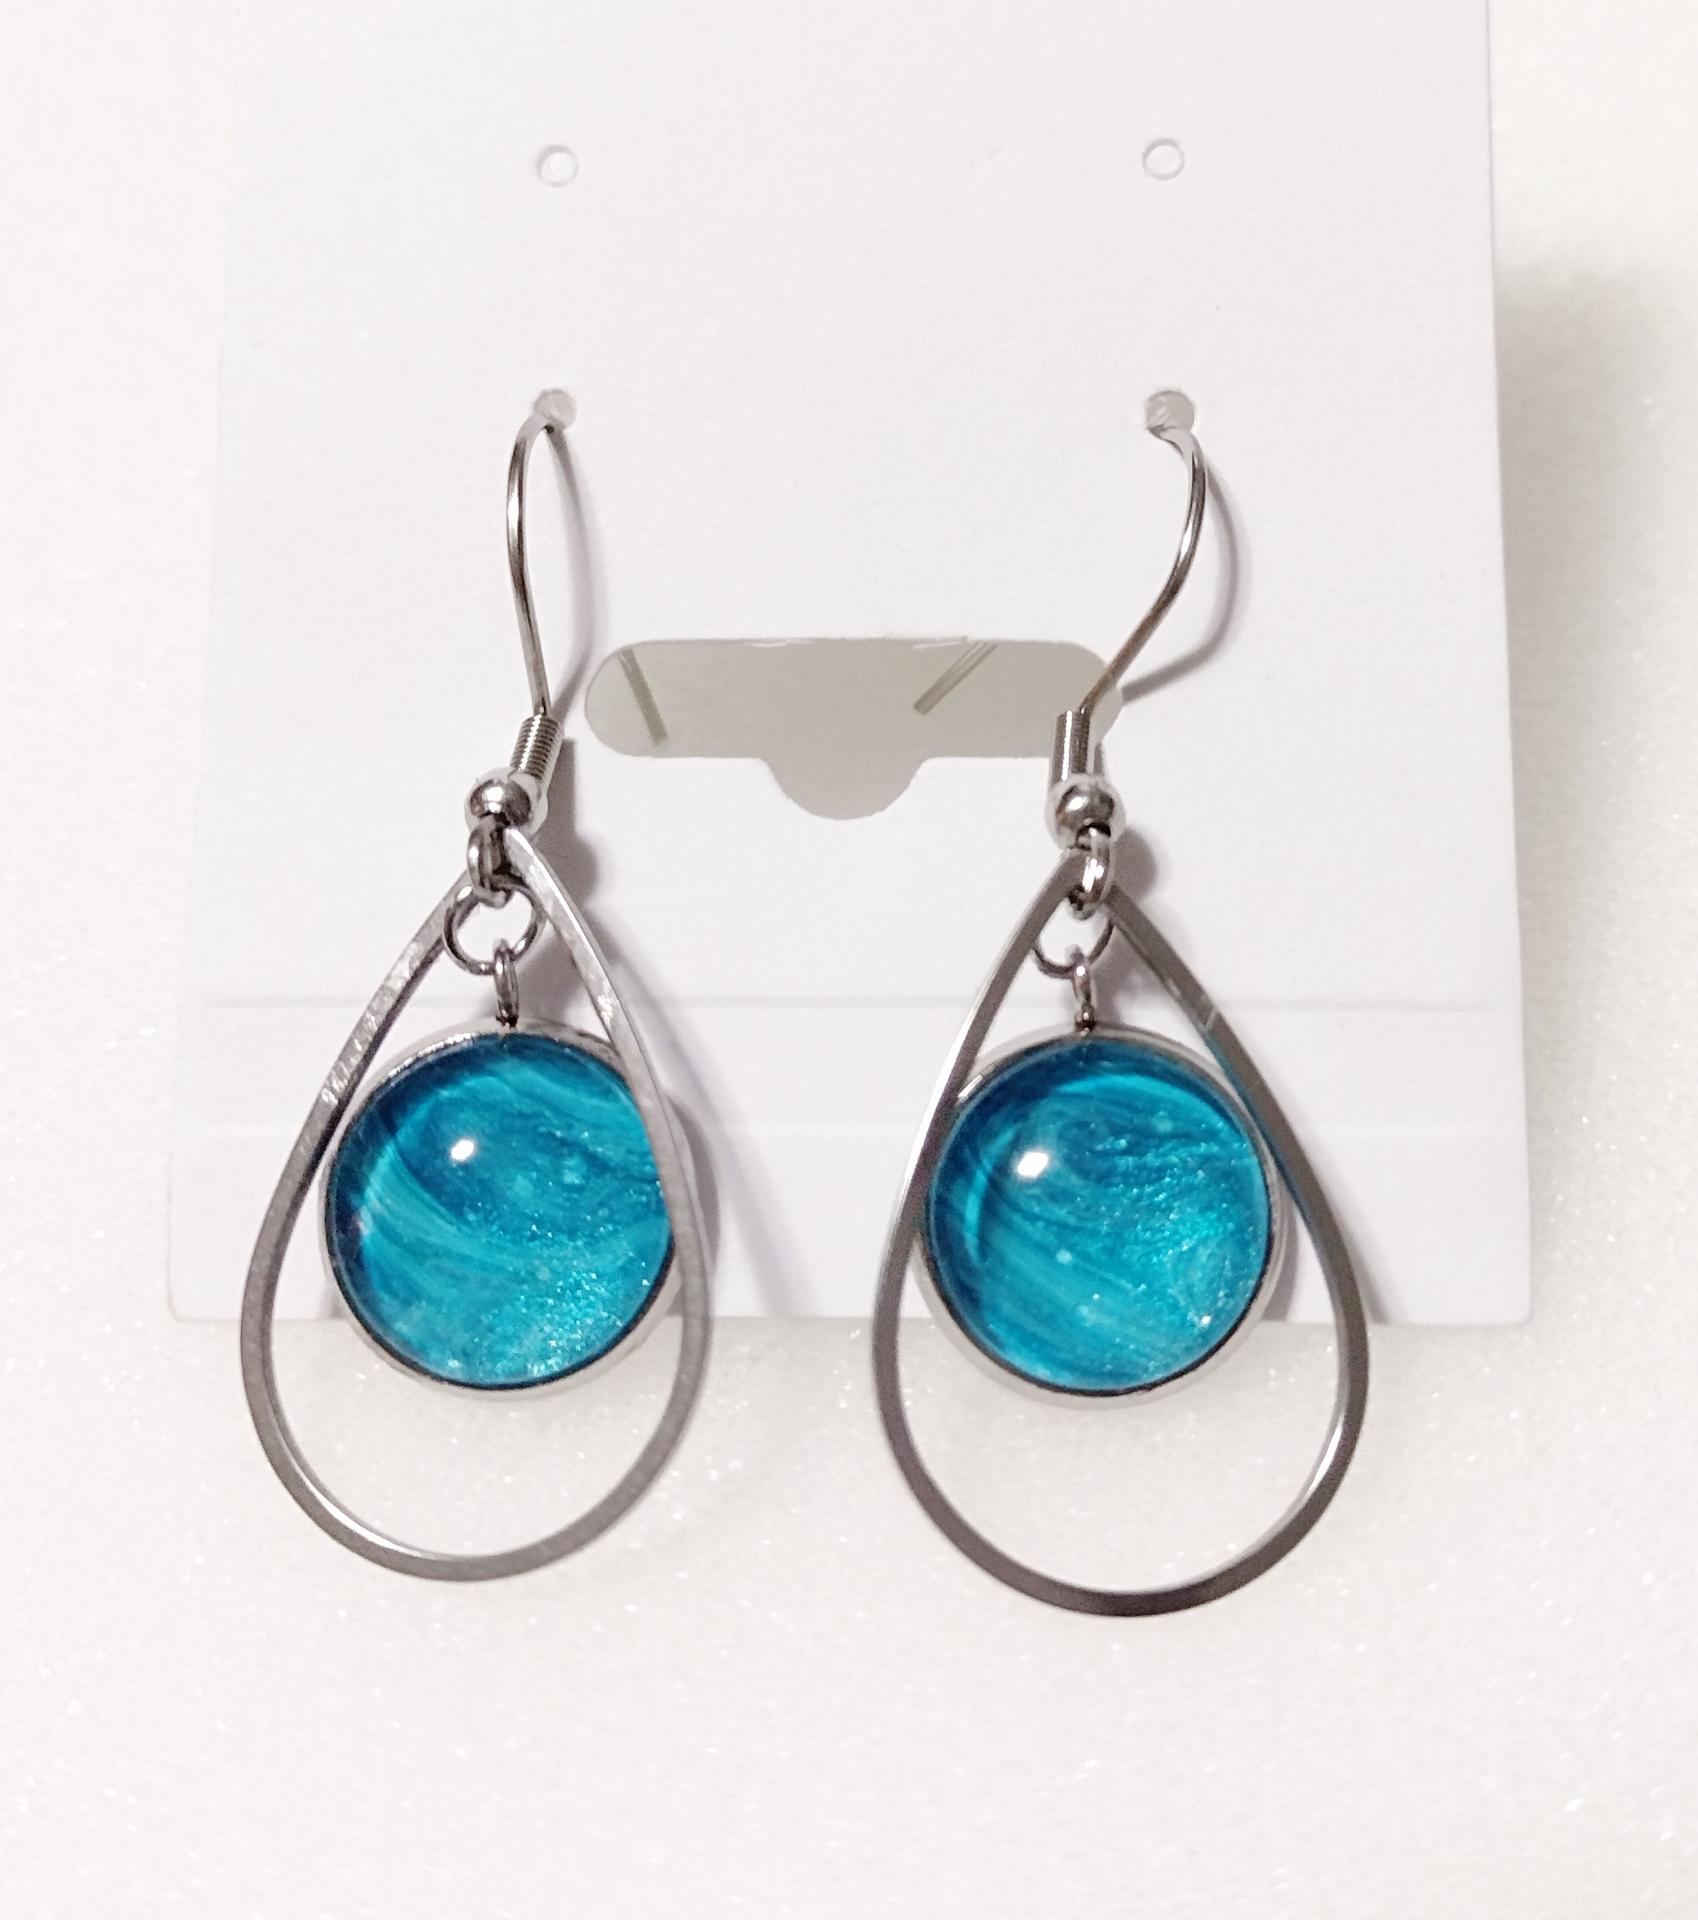 Painted Earrings, Aqua Blue Swirl Teardrops